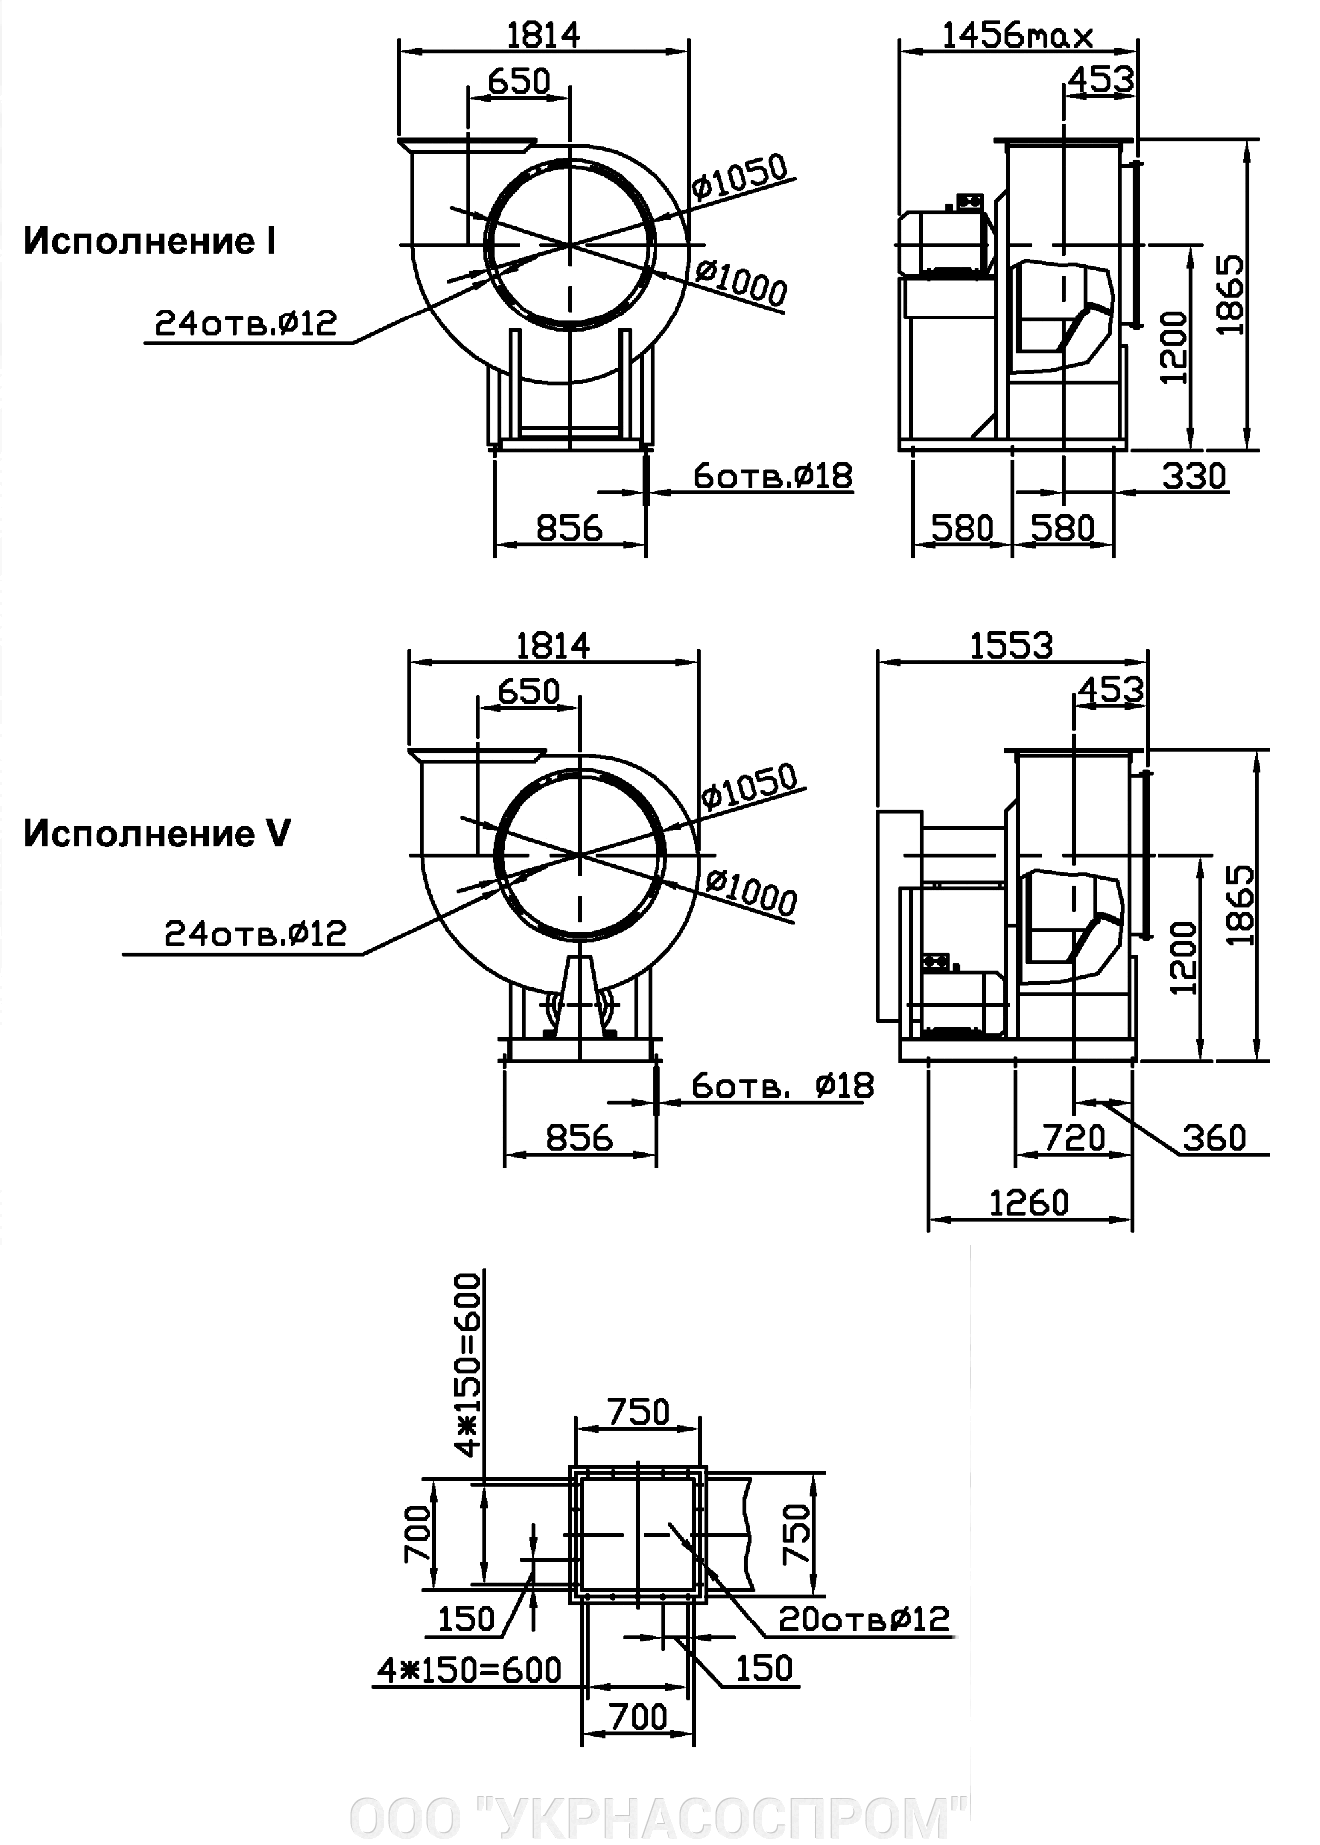 Вентилятор ВЦ 4-75 №10 11 кВт 750 об/мин